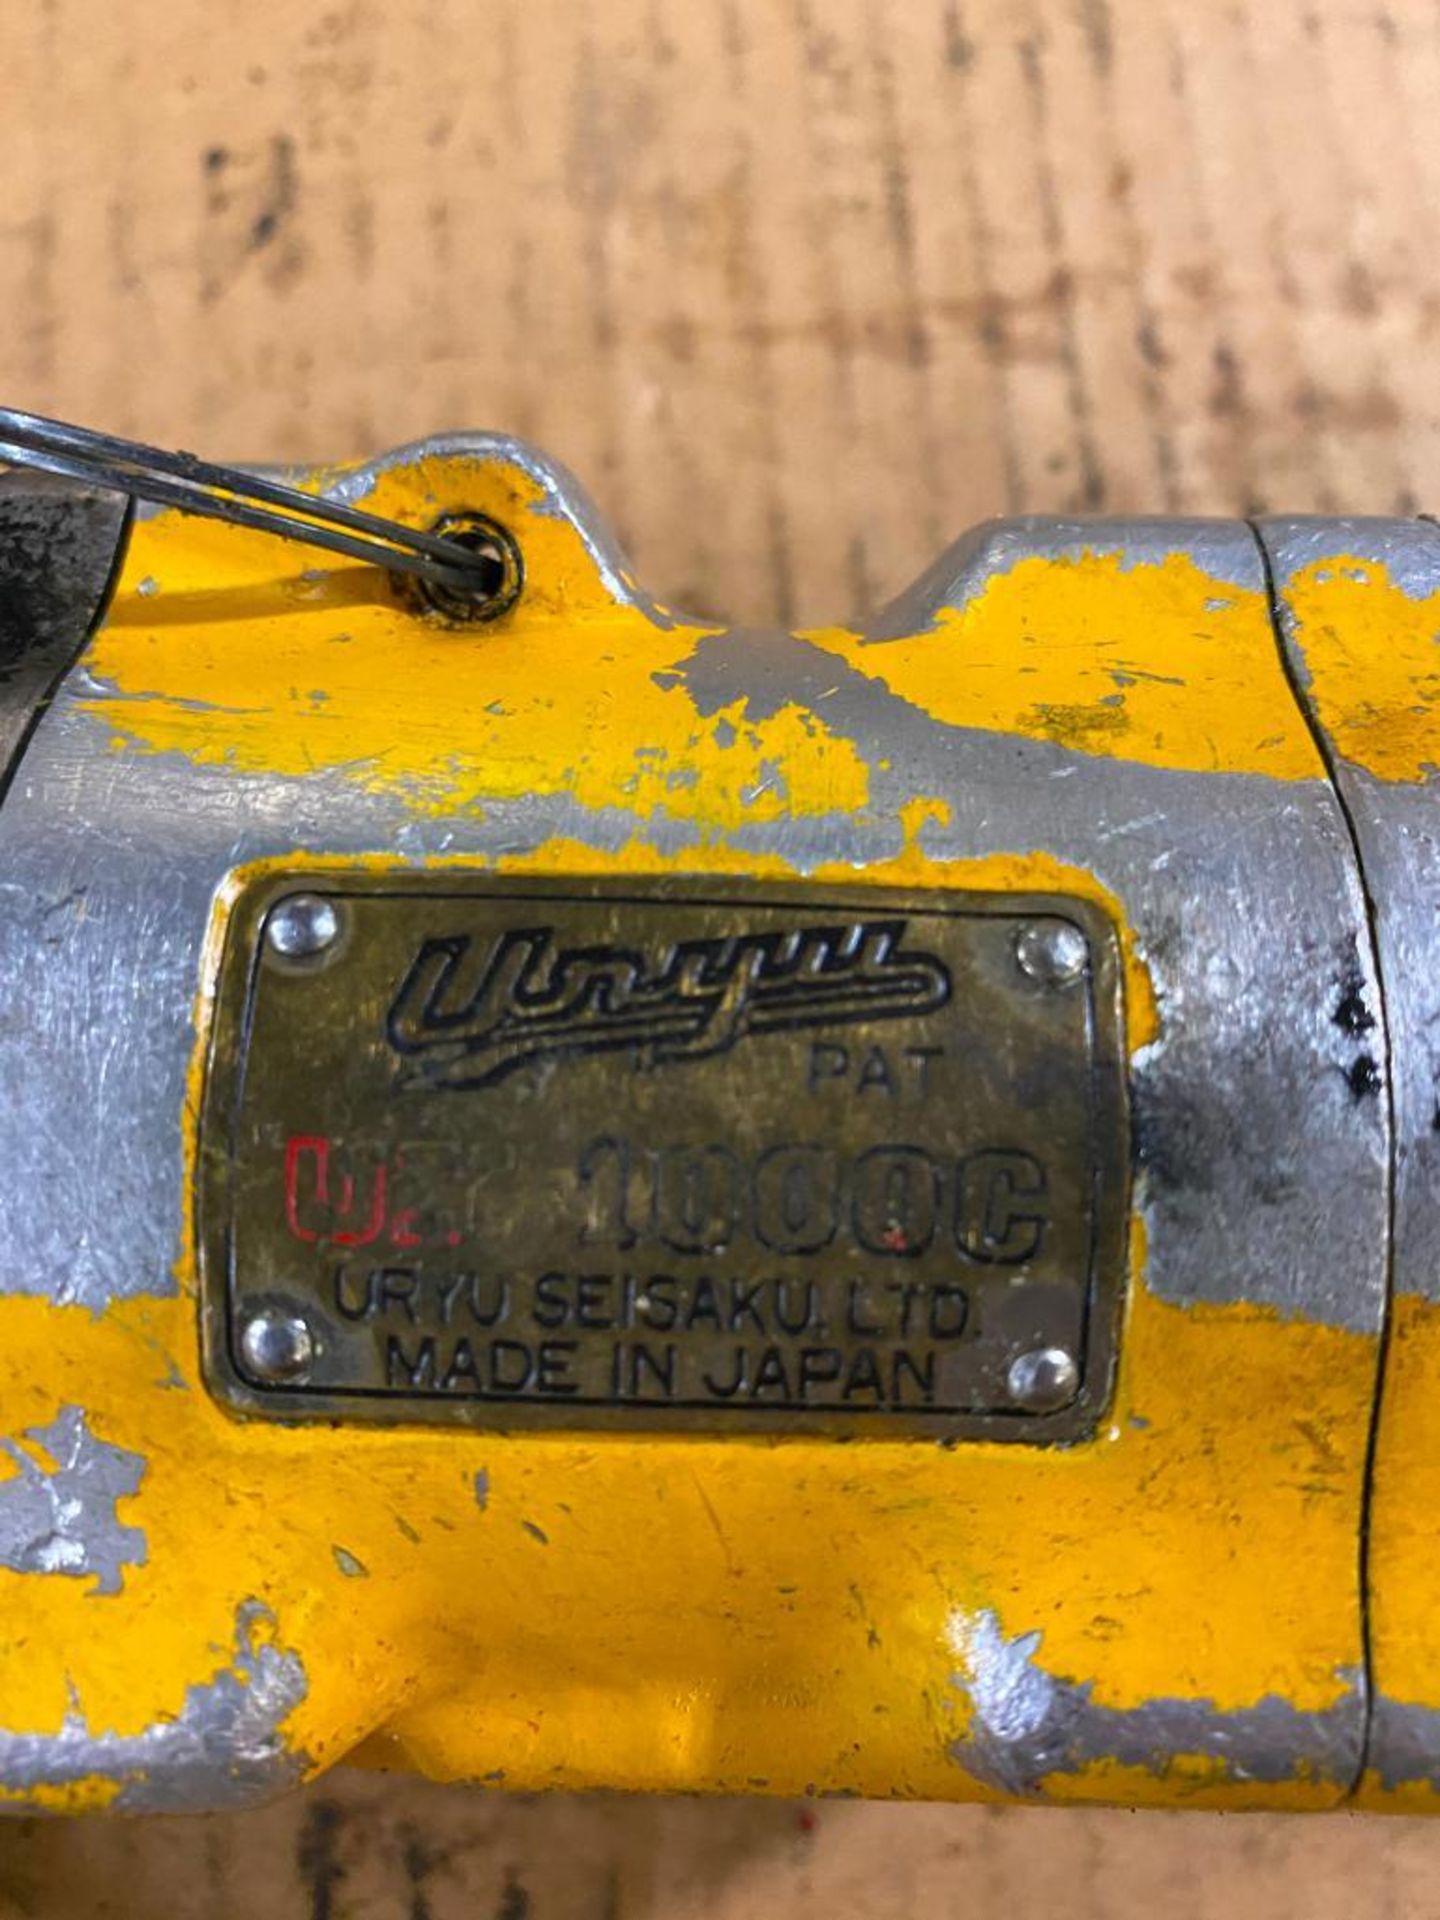 Uryu UX1000C 1/2" Pneumatic Ratchet Wrench - Image 2 of 2